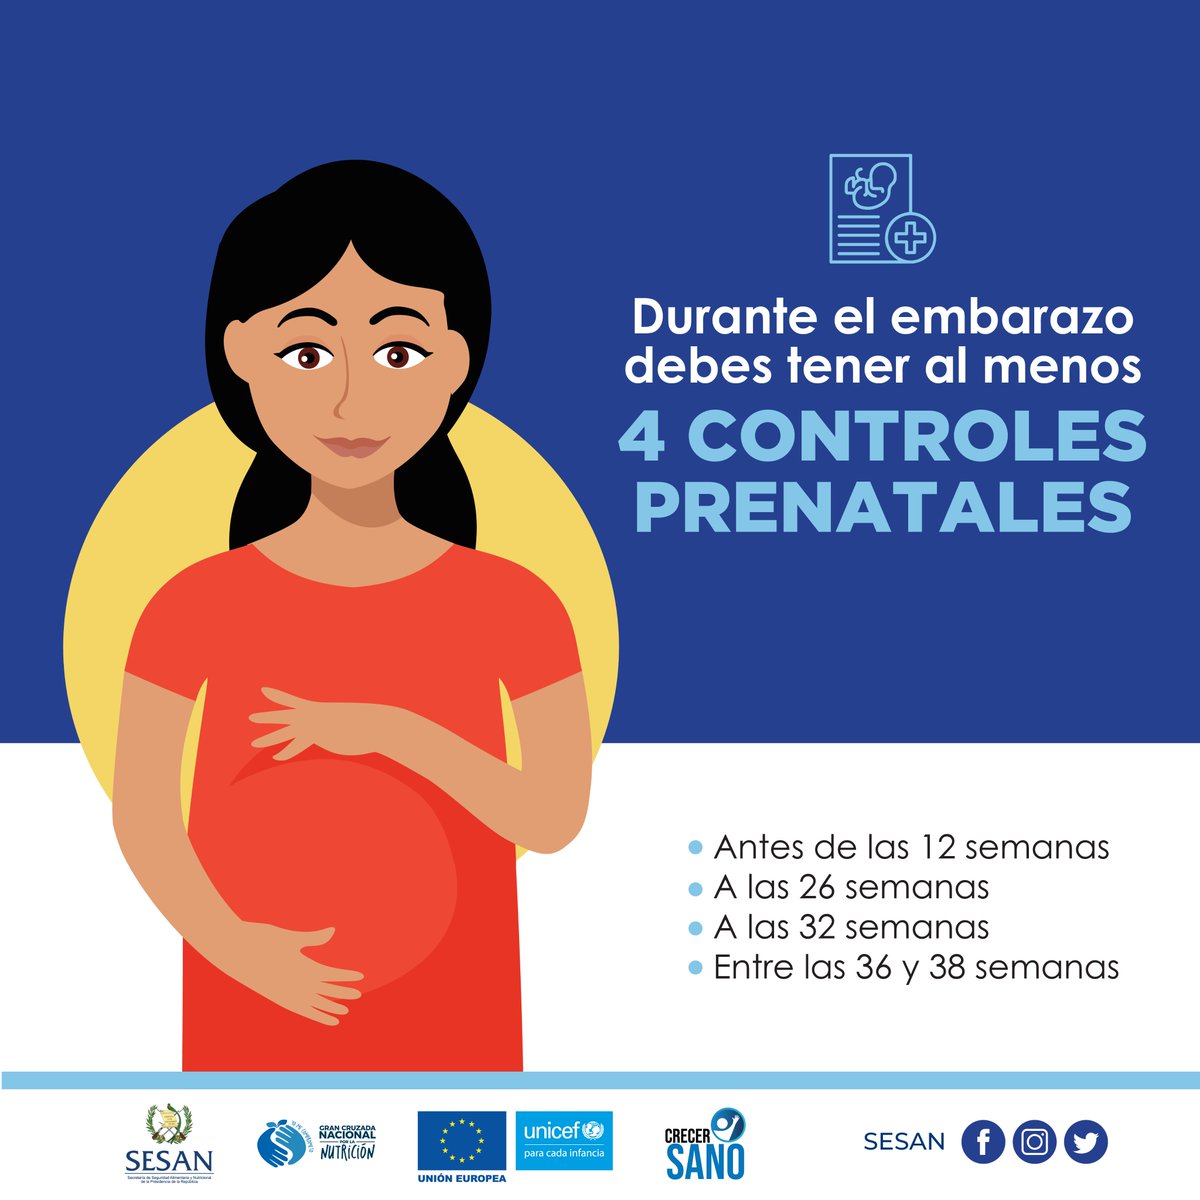 👩‍⚕️El control prenatal es importante para la madre y su hijo 🤰, ya que es por medio de este que se puede verificar el estado de salud, el desarrollo y bienestar del bebé en gestación. 
#GCNN #CrecerSano